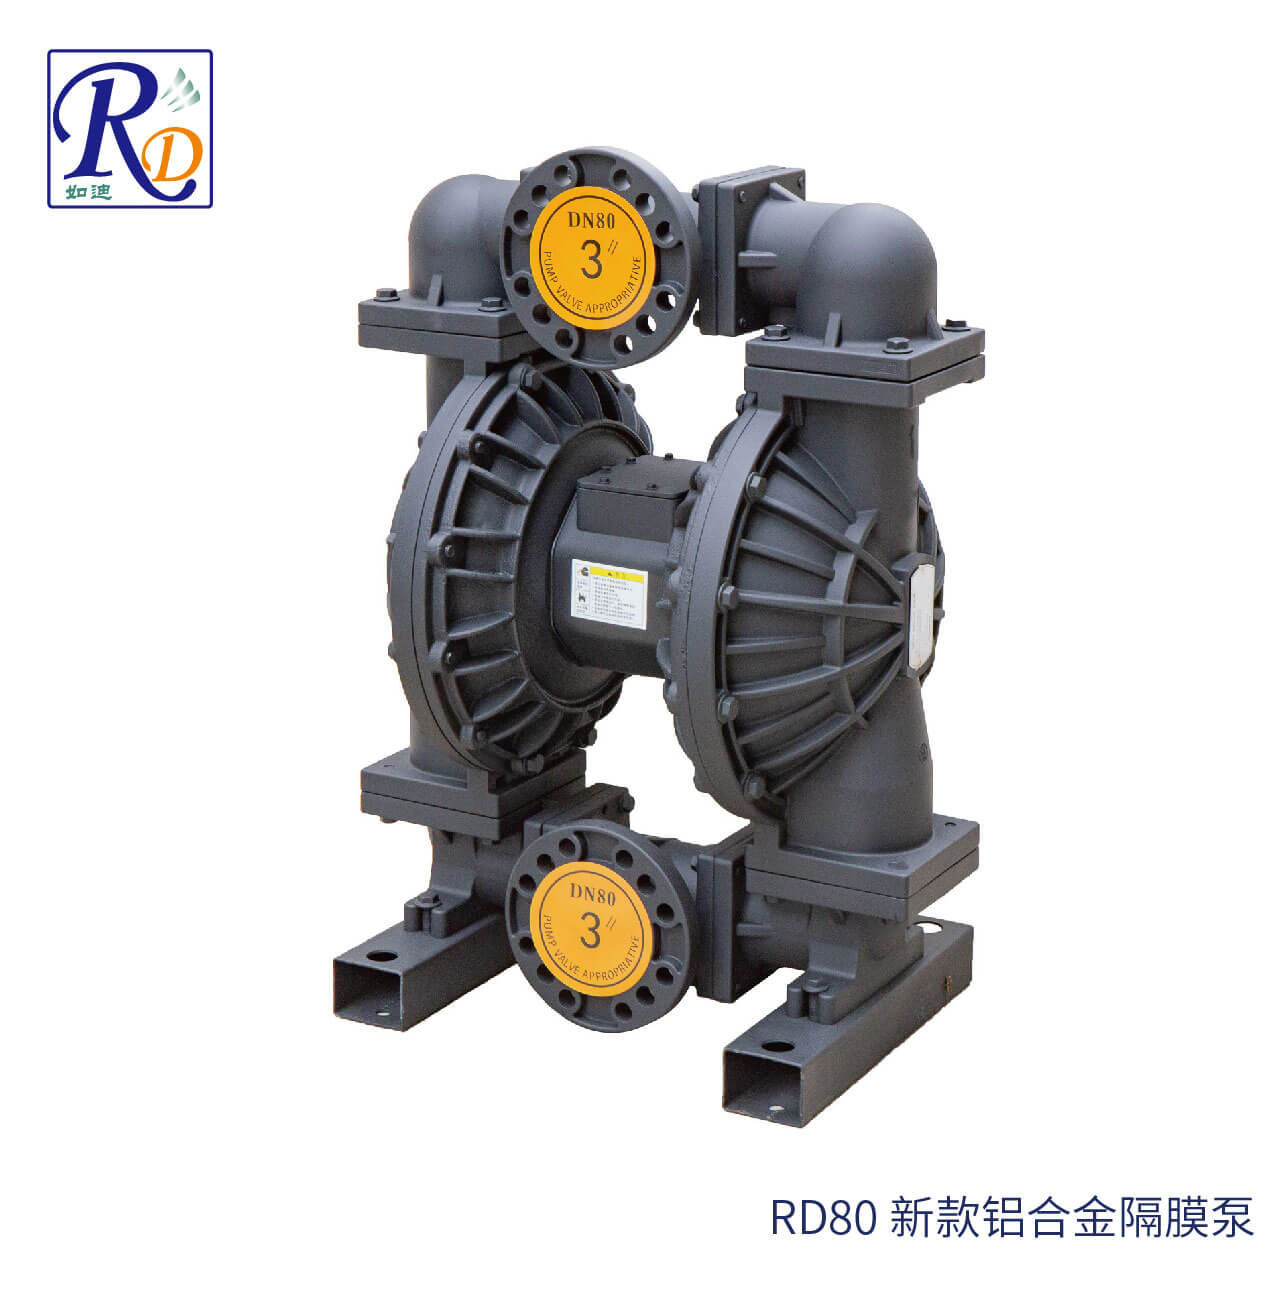 RD80 新款铝合金隔膜泵